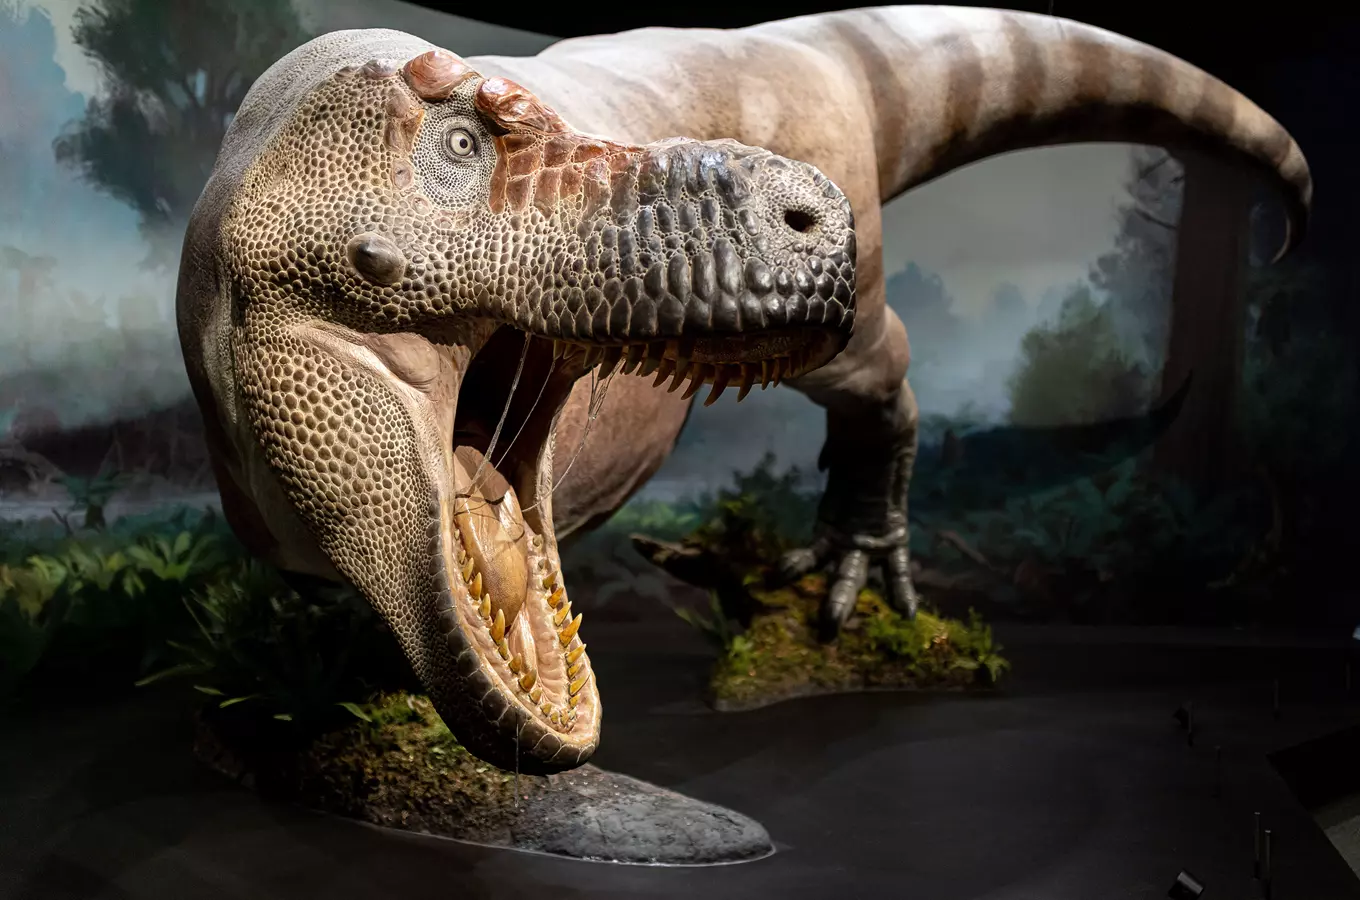 Dinosauria Museum Prague – Dinosauria Praha